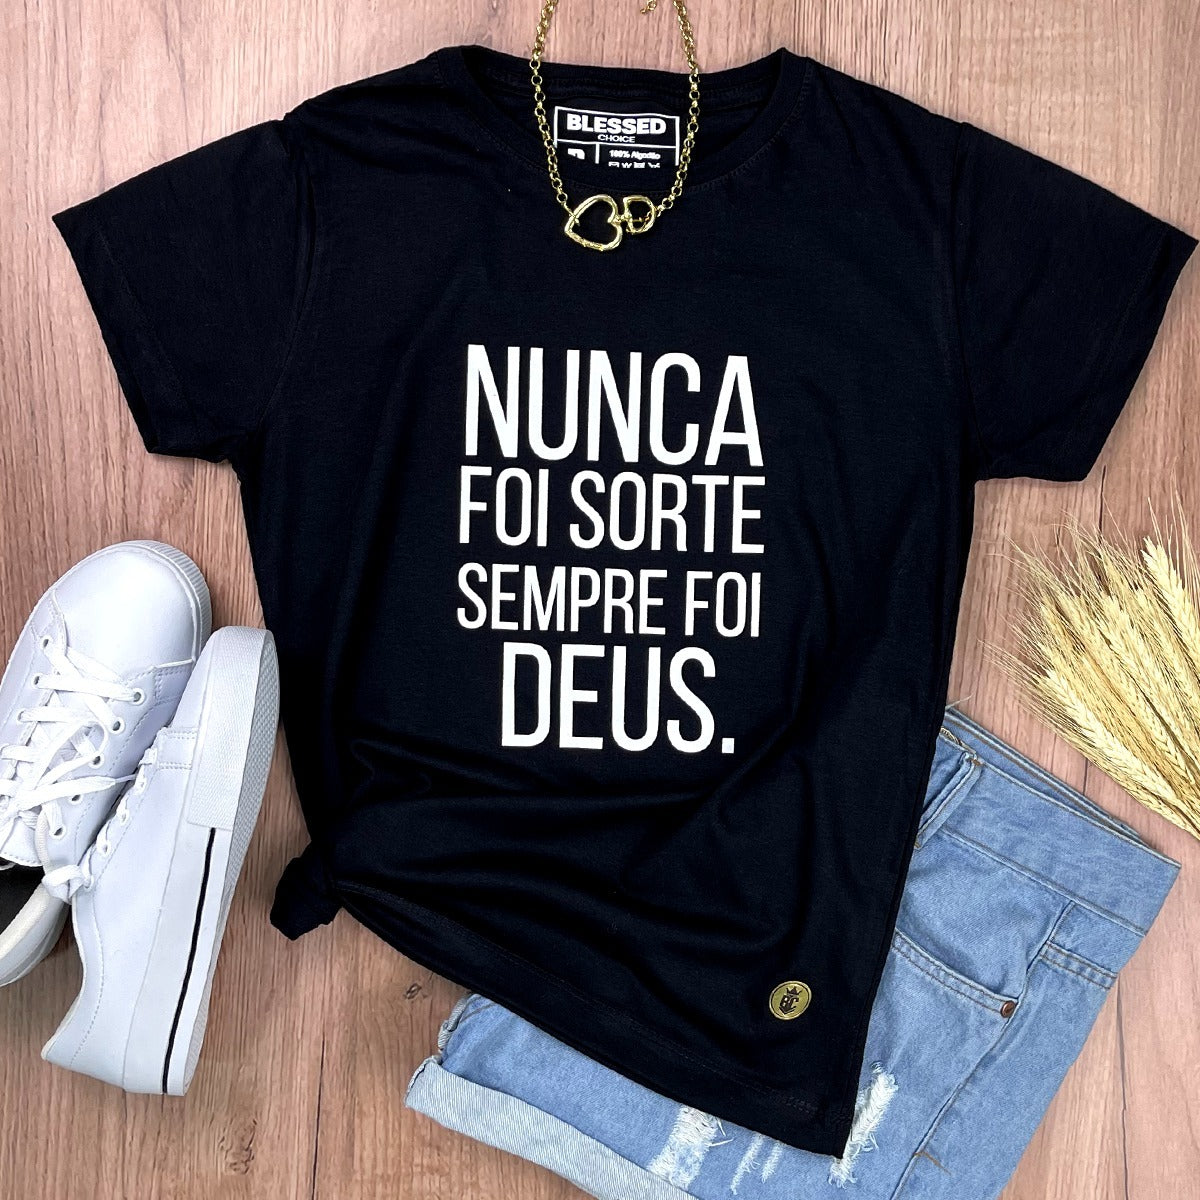 Camiseta Feminina Preta Nunca foi sorte sempre foi Deus.